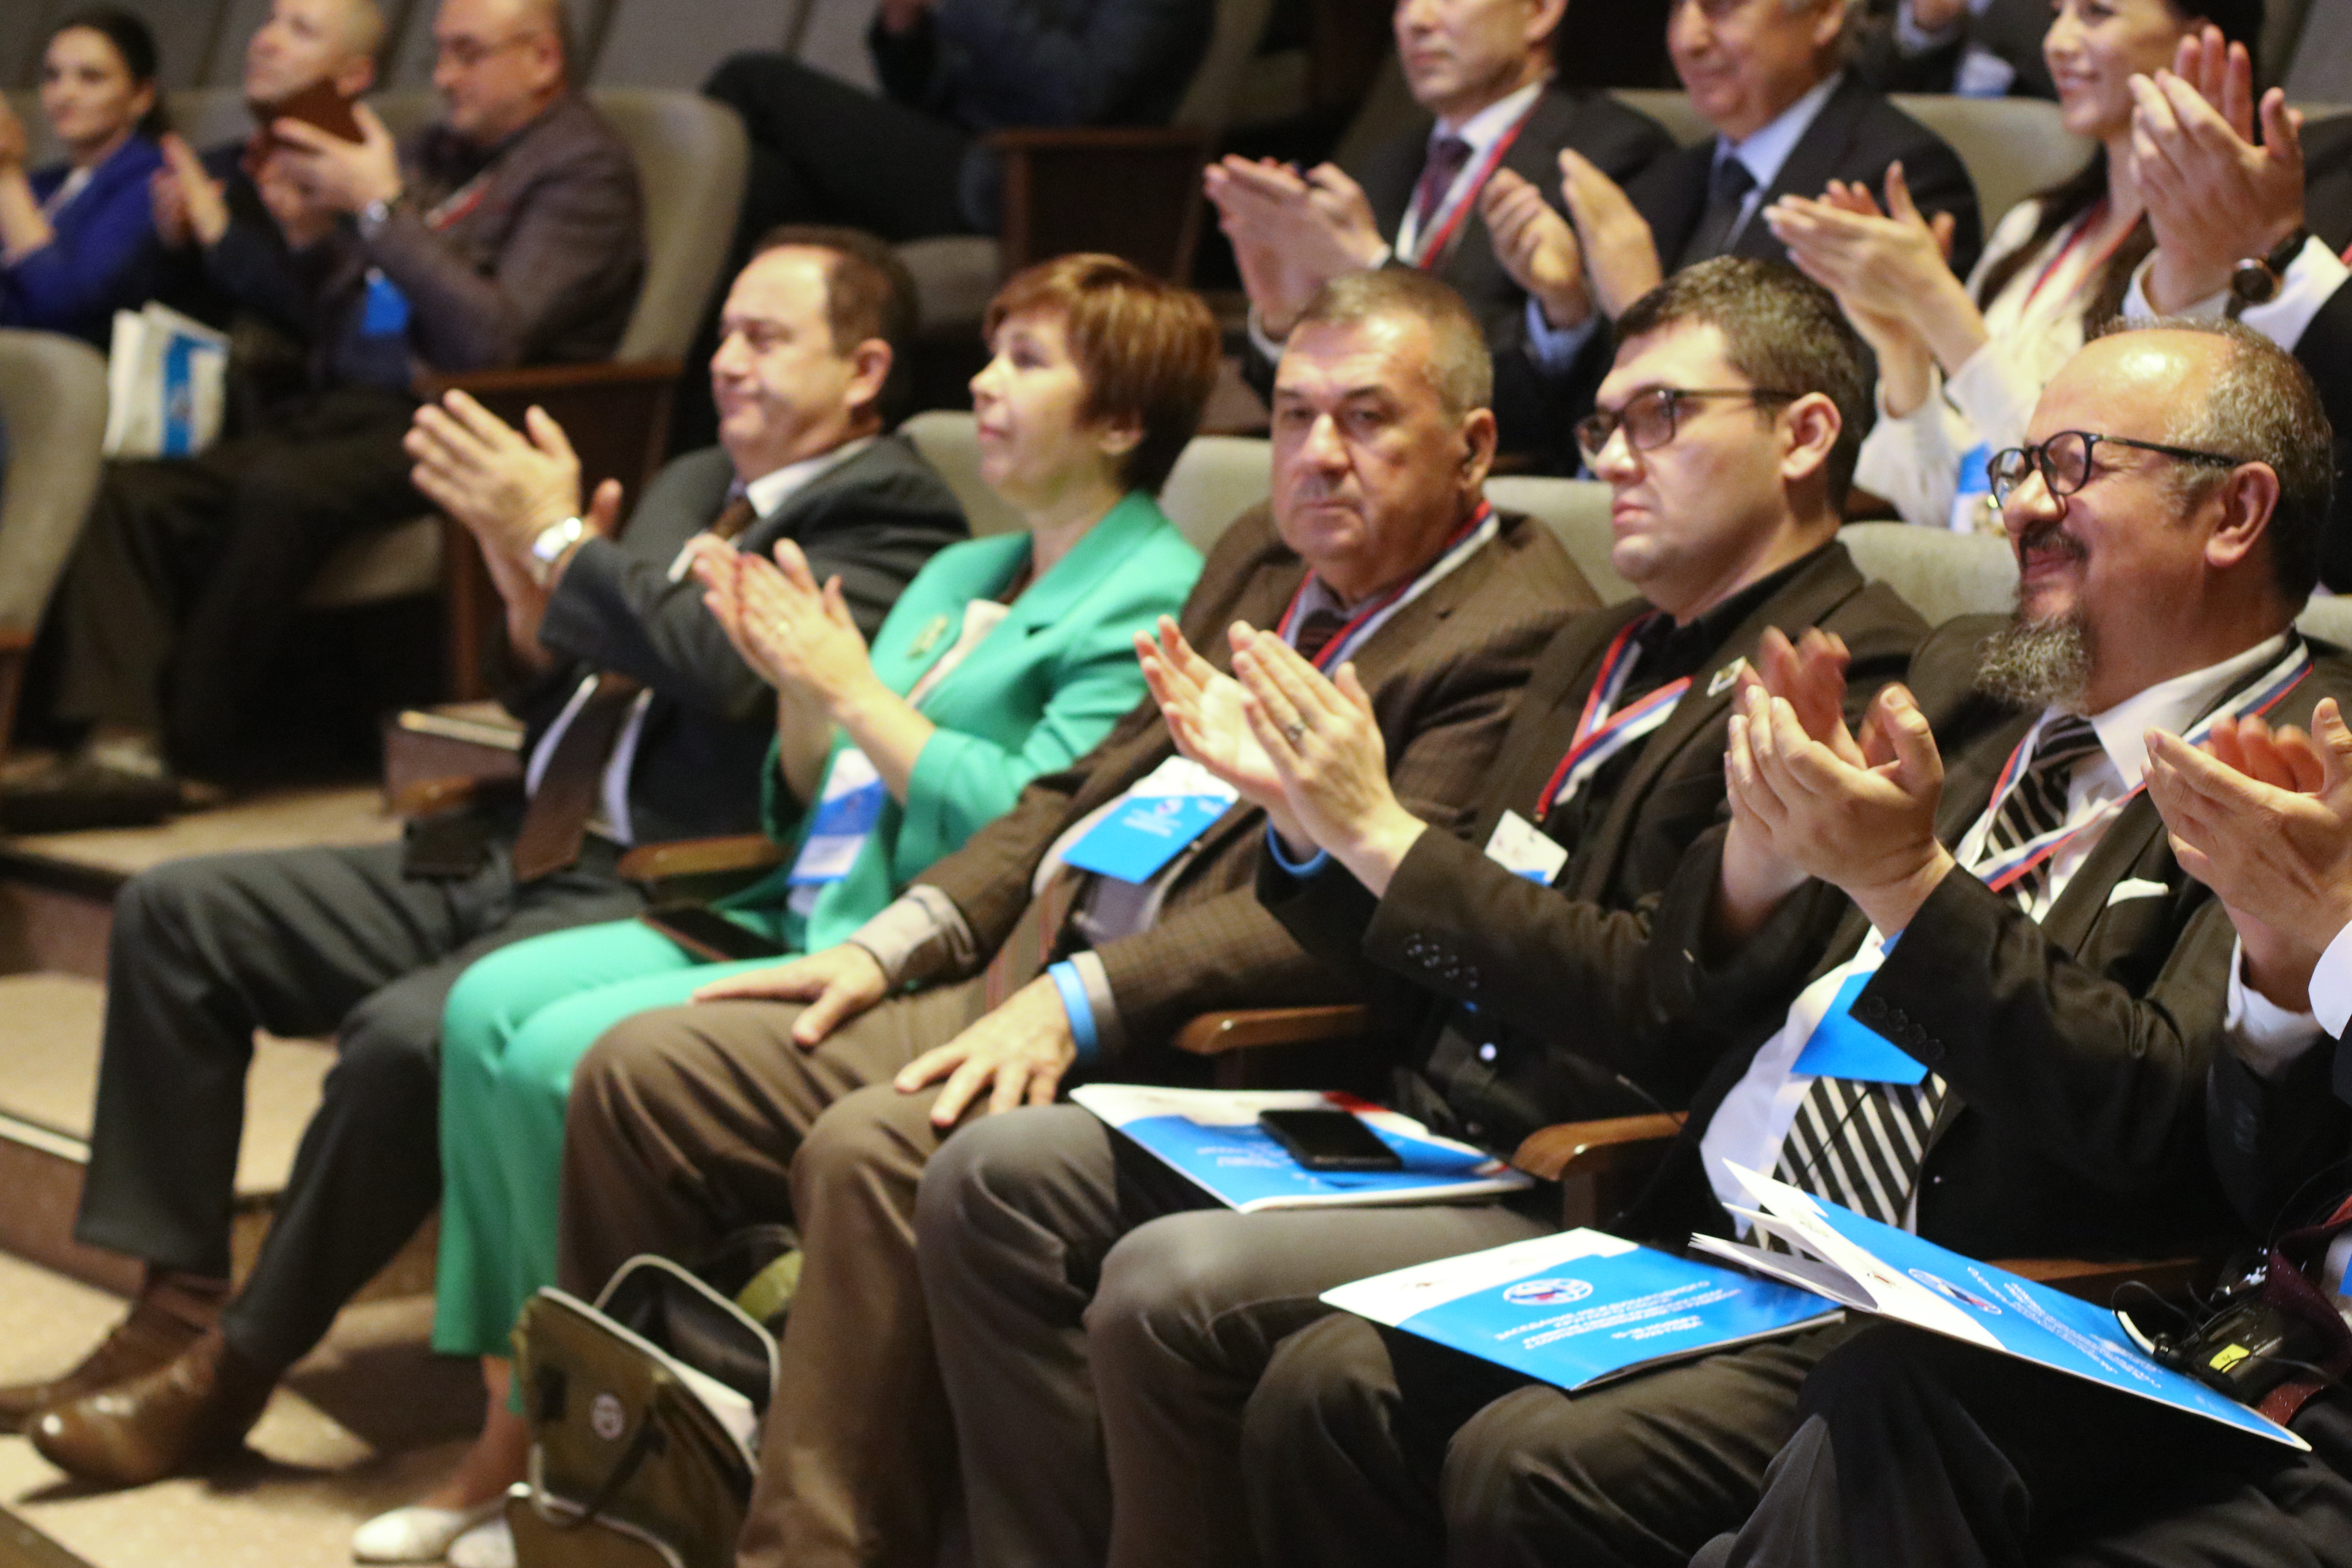 В Крыму состоялся международный круглый стол «Развитие связей крымских татар с соотечественниками за рубежом»